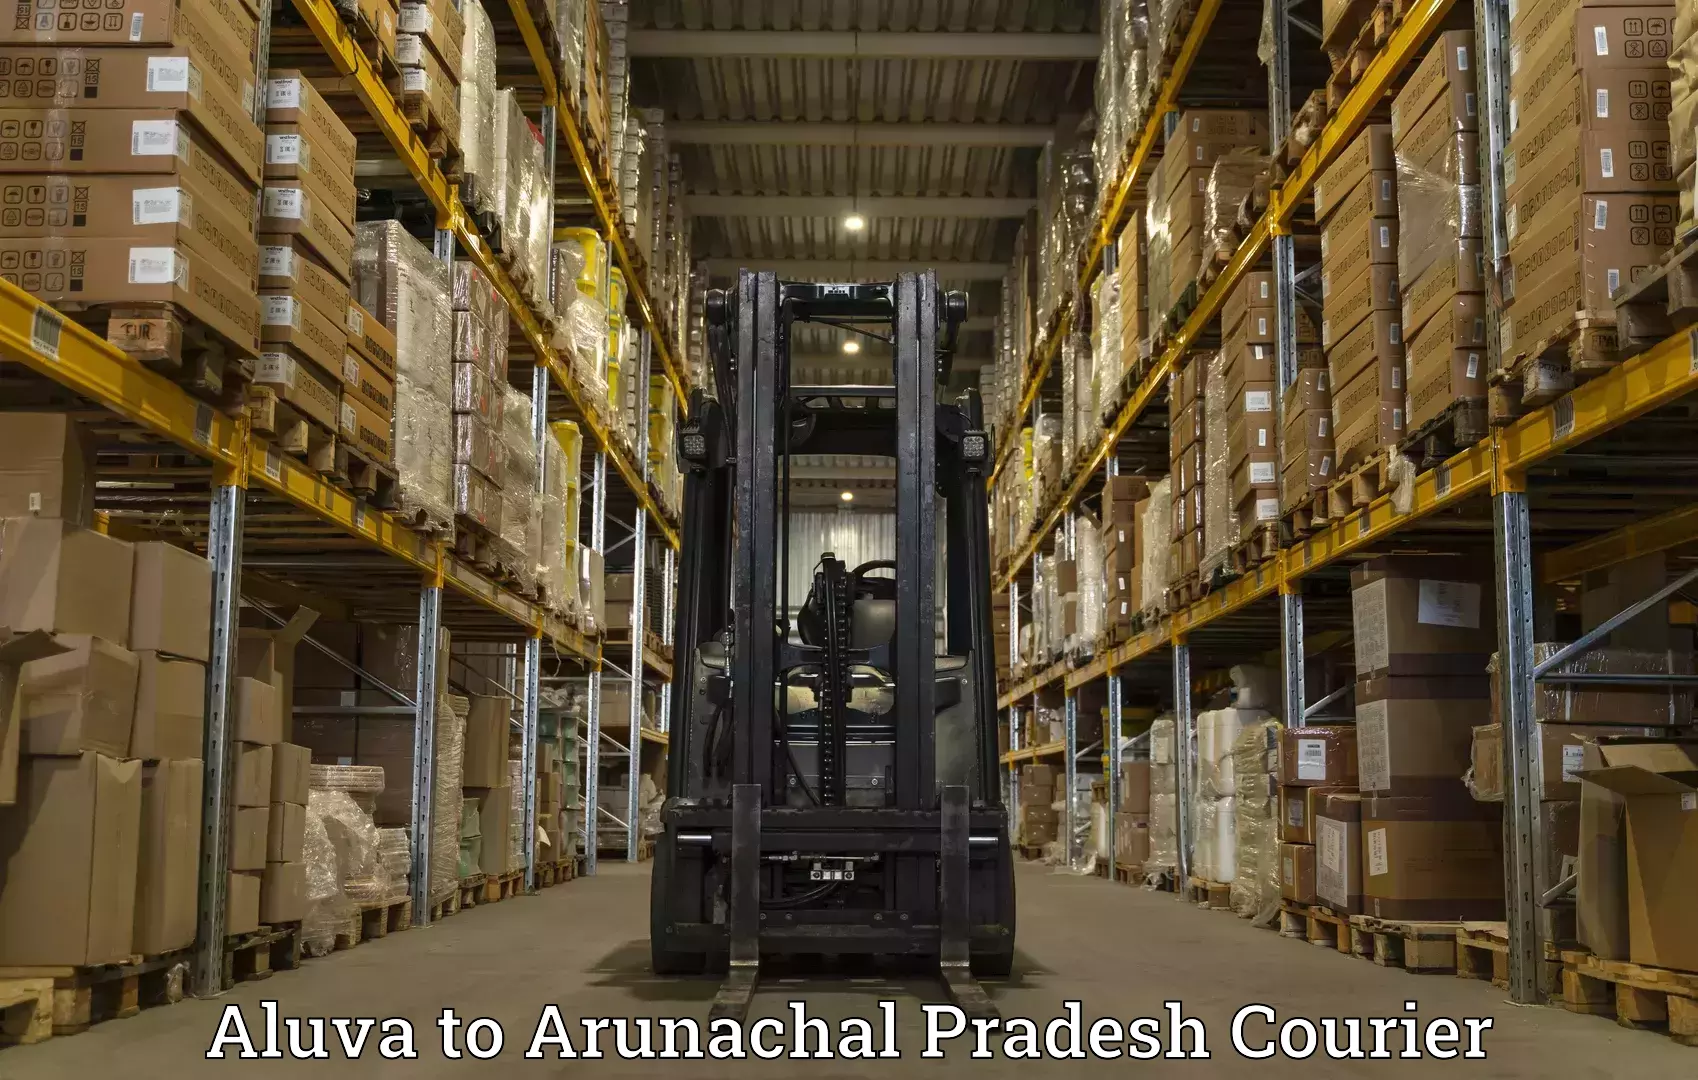 Premium courier solutions Aluva to Arunachal Pradesh